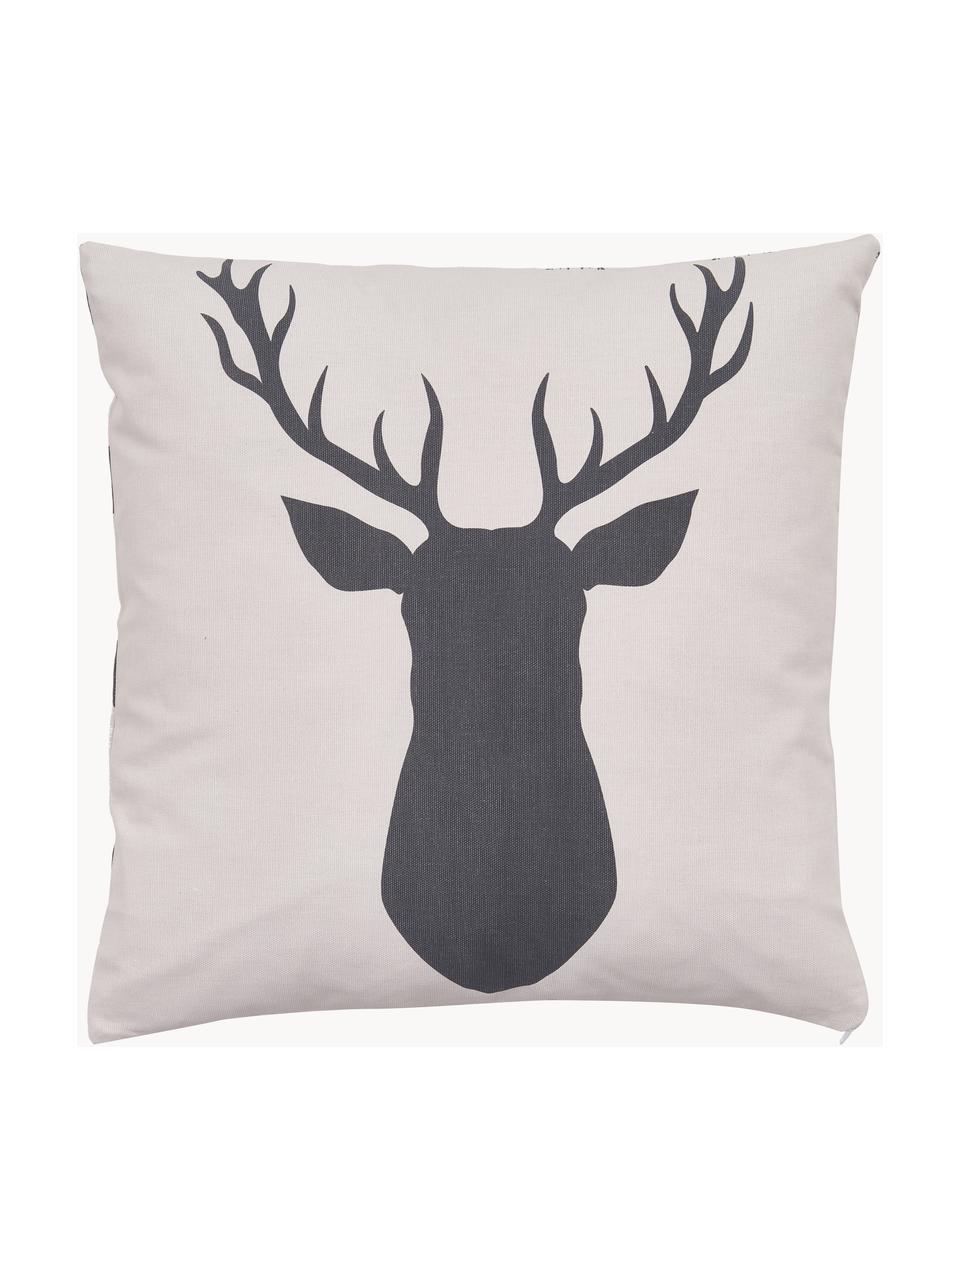 Dwustronna poszewka na poduszkę z bawełny organicznej Deer, 100% bawełna organiczna, Szary, kremowobiały, S 45 x D 45 cm